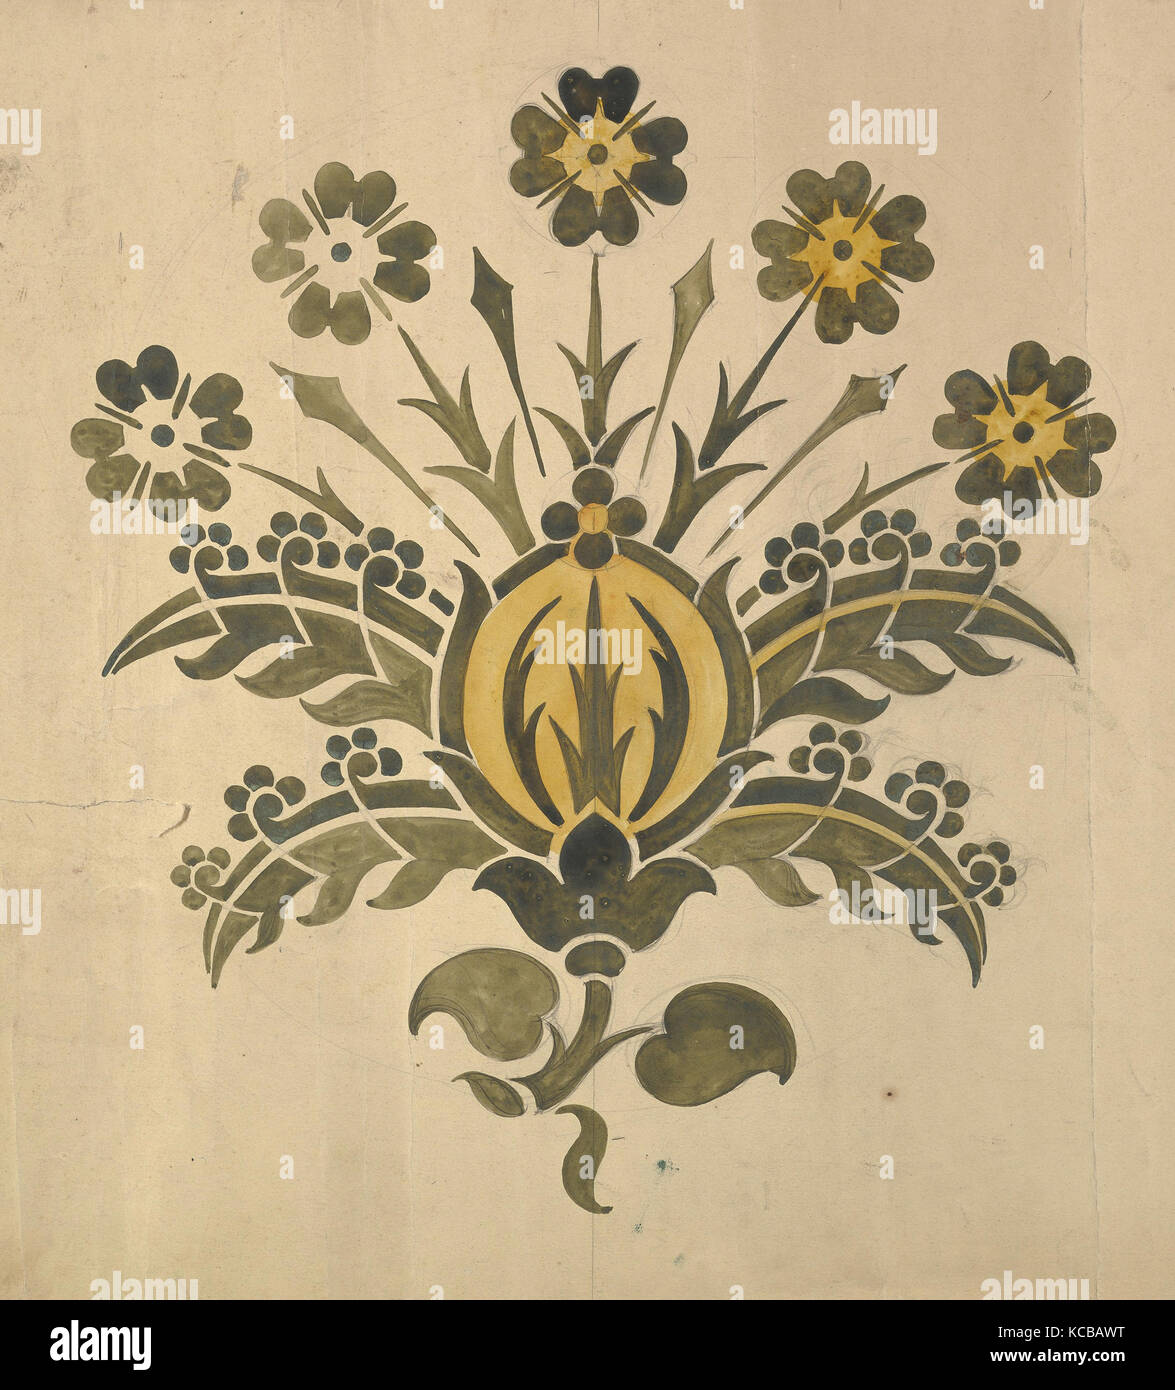 En vert et jaune fleur stylisée pour pochoir mural, Ernest Geldart, fin du xixe ou début du xxe siècle Banque D'Images